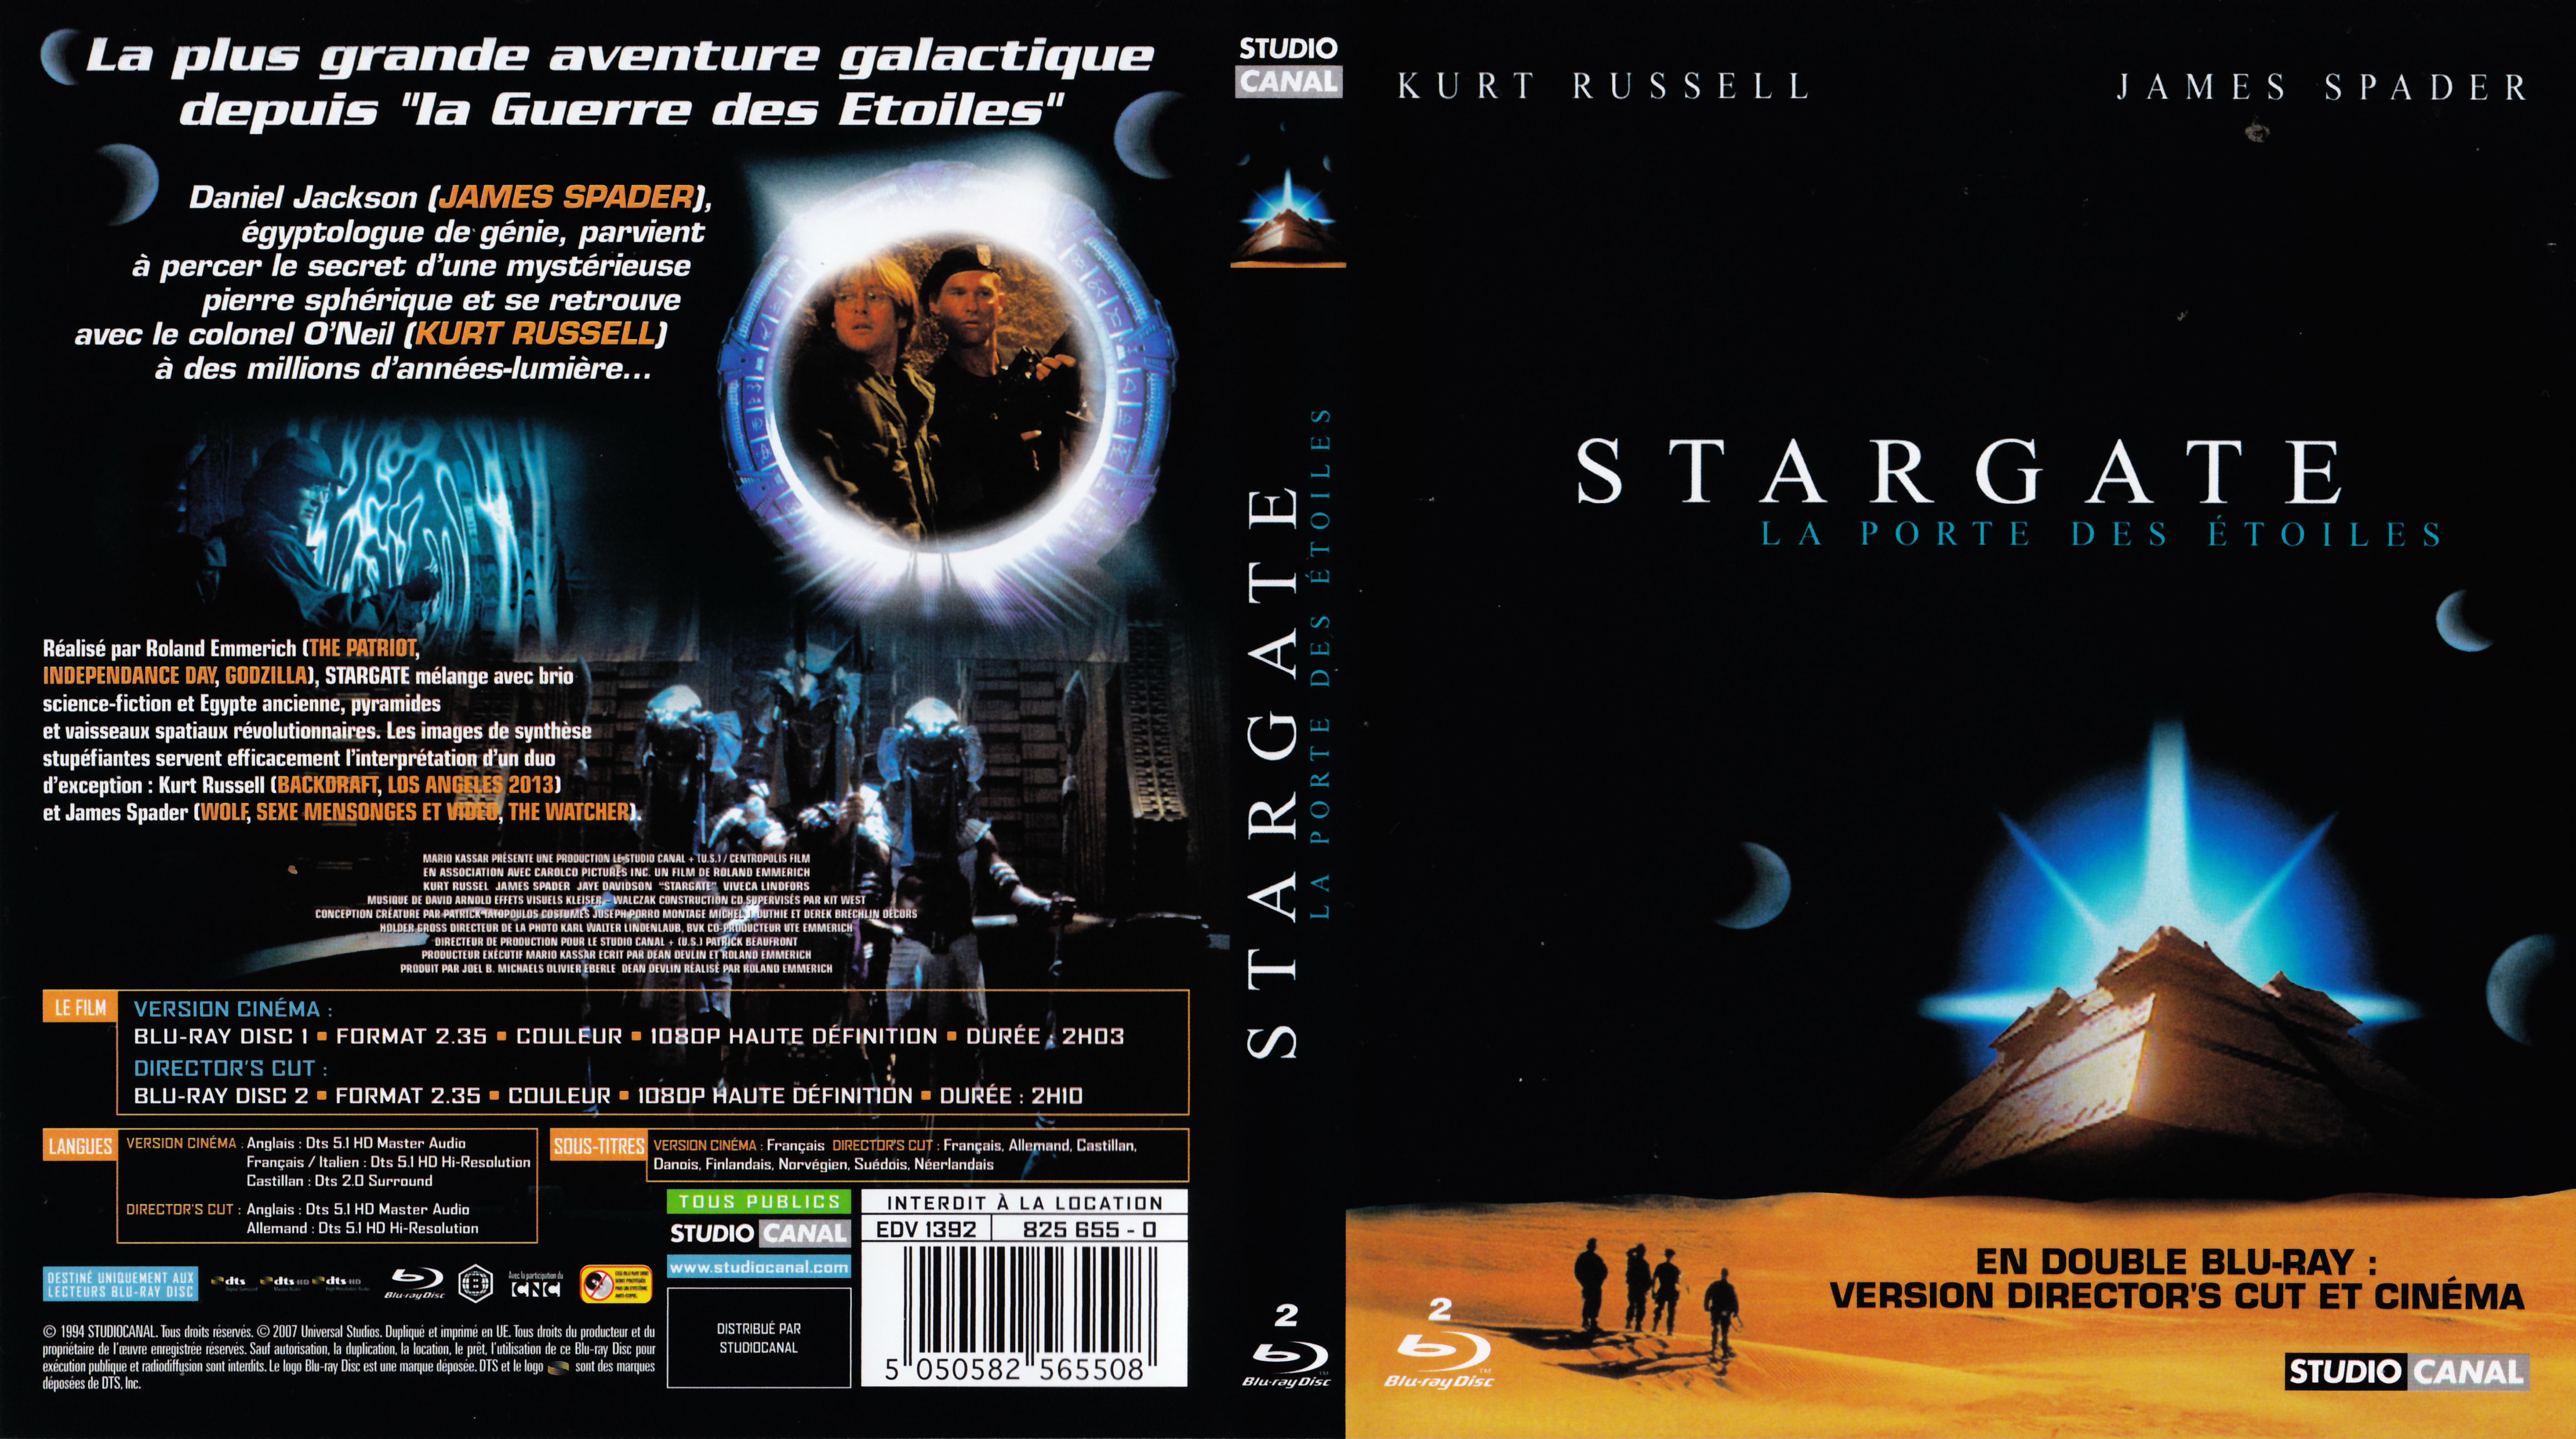 Jaquette DVD Stargate la porte des toiles (BLU-RAY)